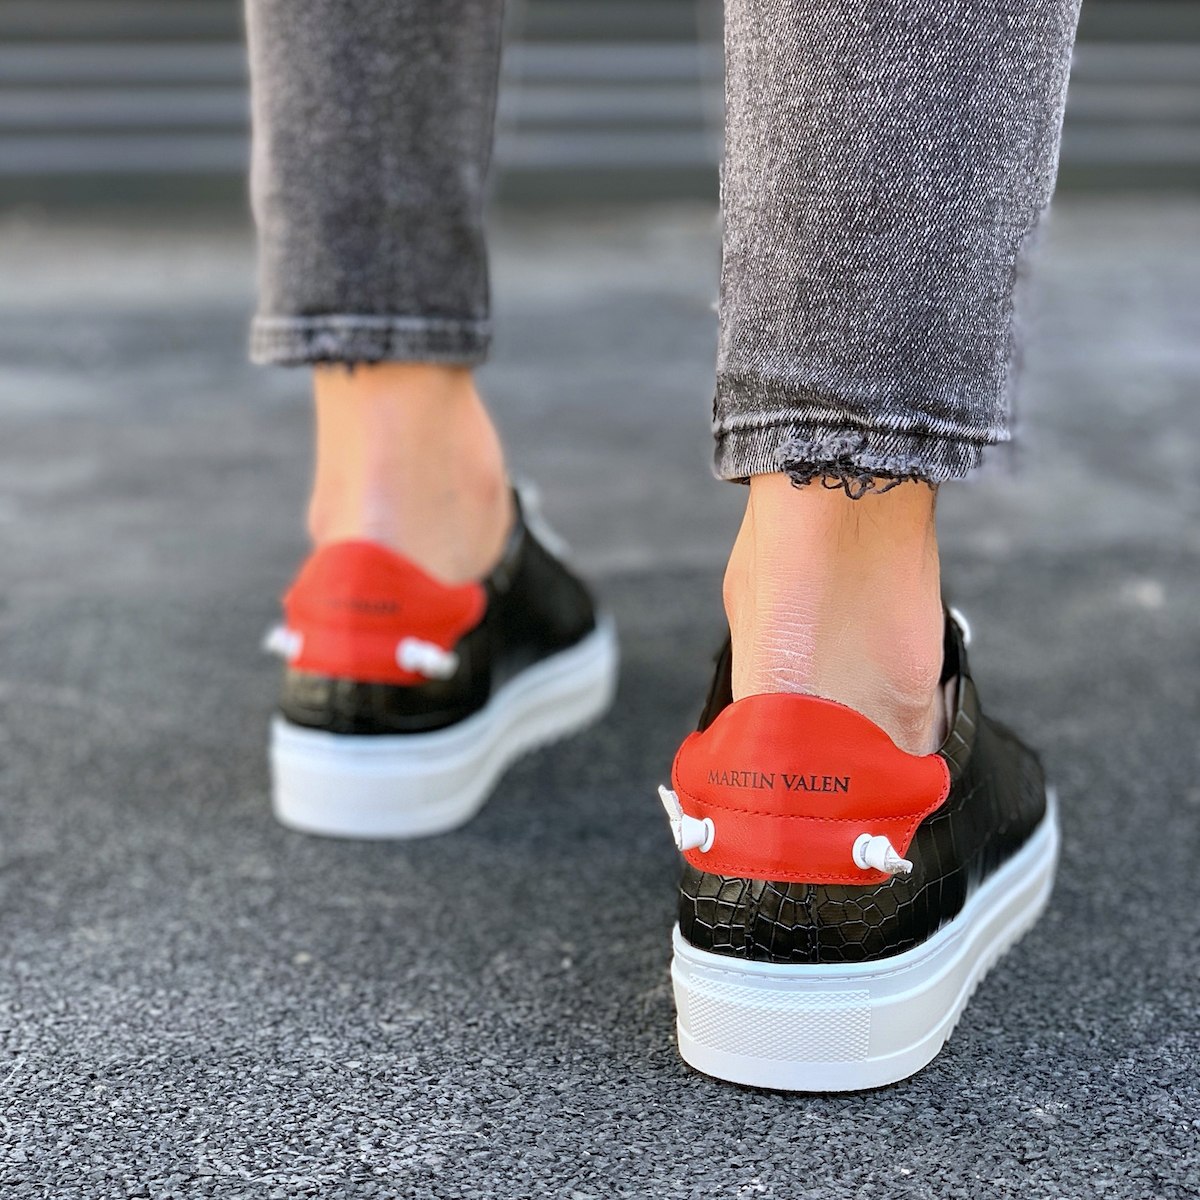 Heren Low Top Croco Sneakers Schoenen Zwart-Wit | Martin Valen